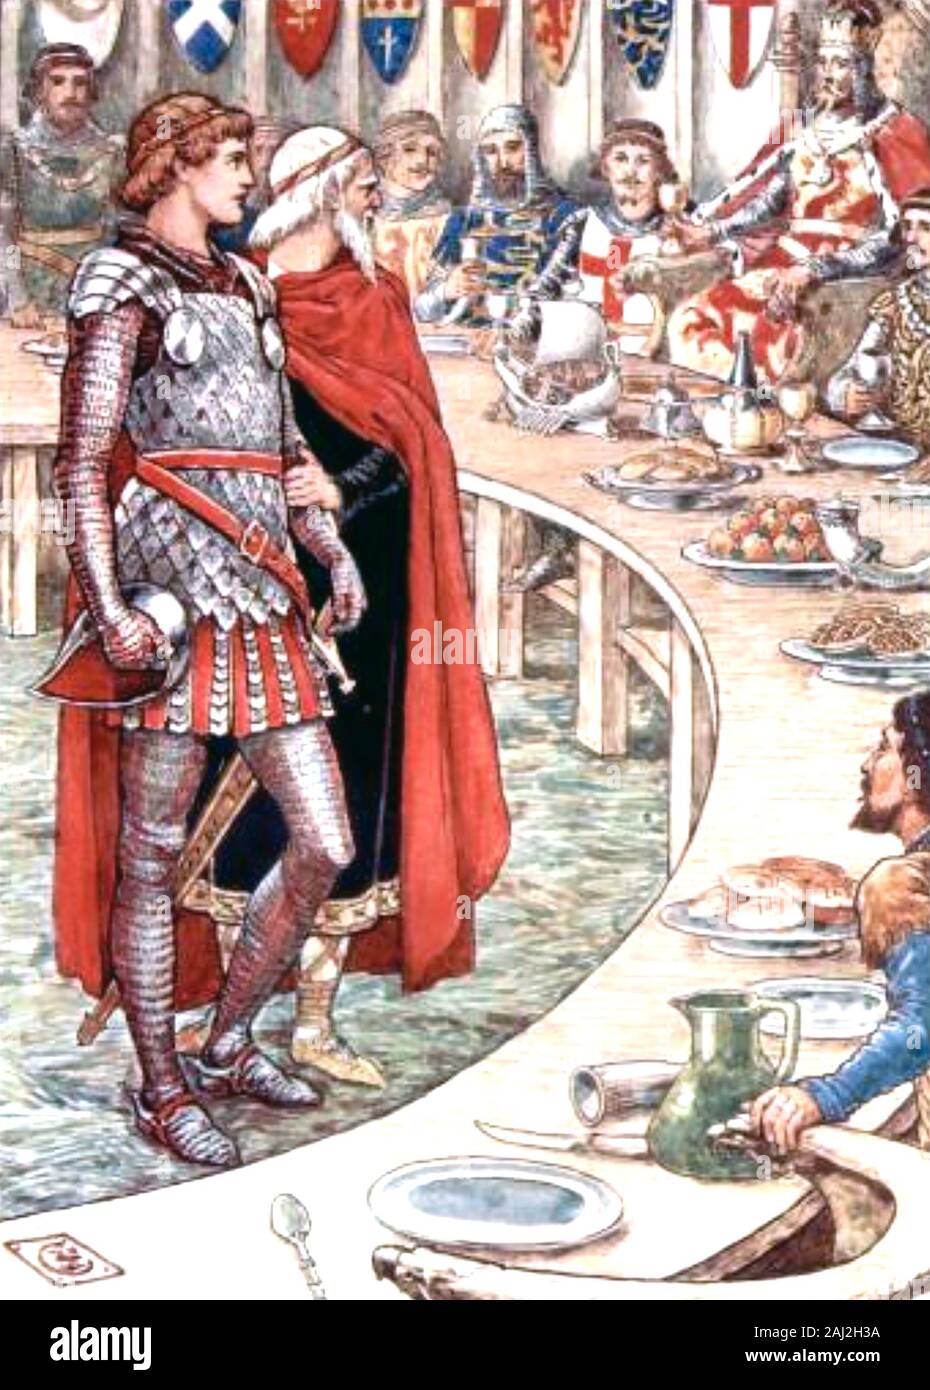 SIR LANCELOT est présenté au genre Arthur et les Chevaliers de la Table ronde i n a 1920 illustration Banque D'Images